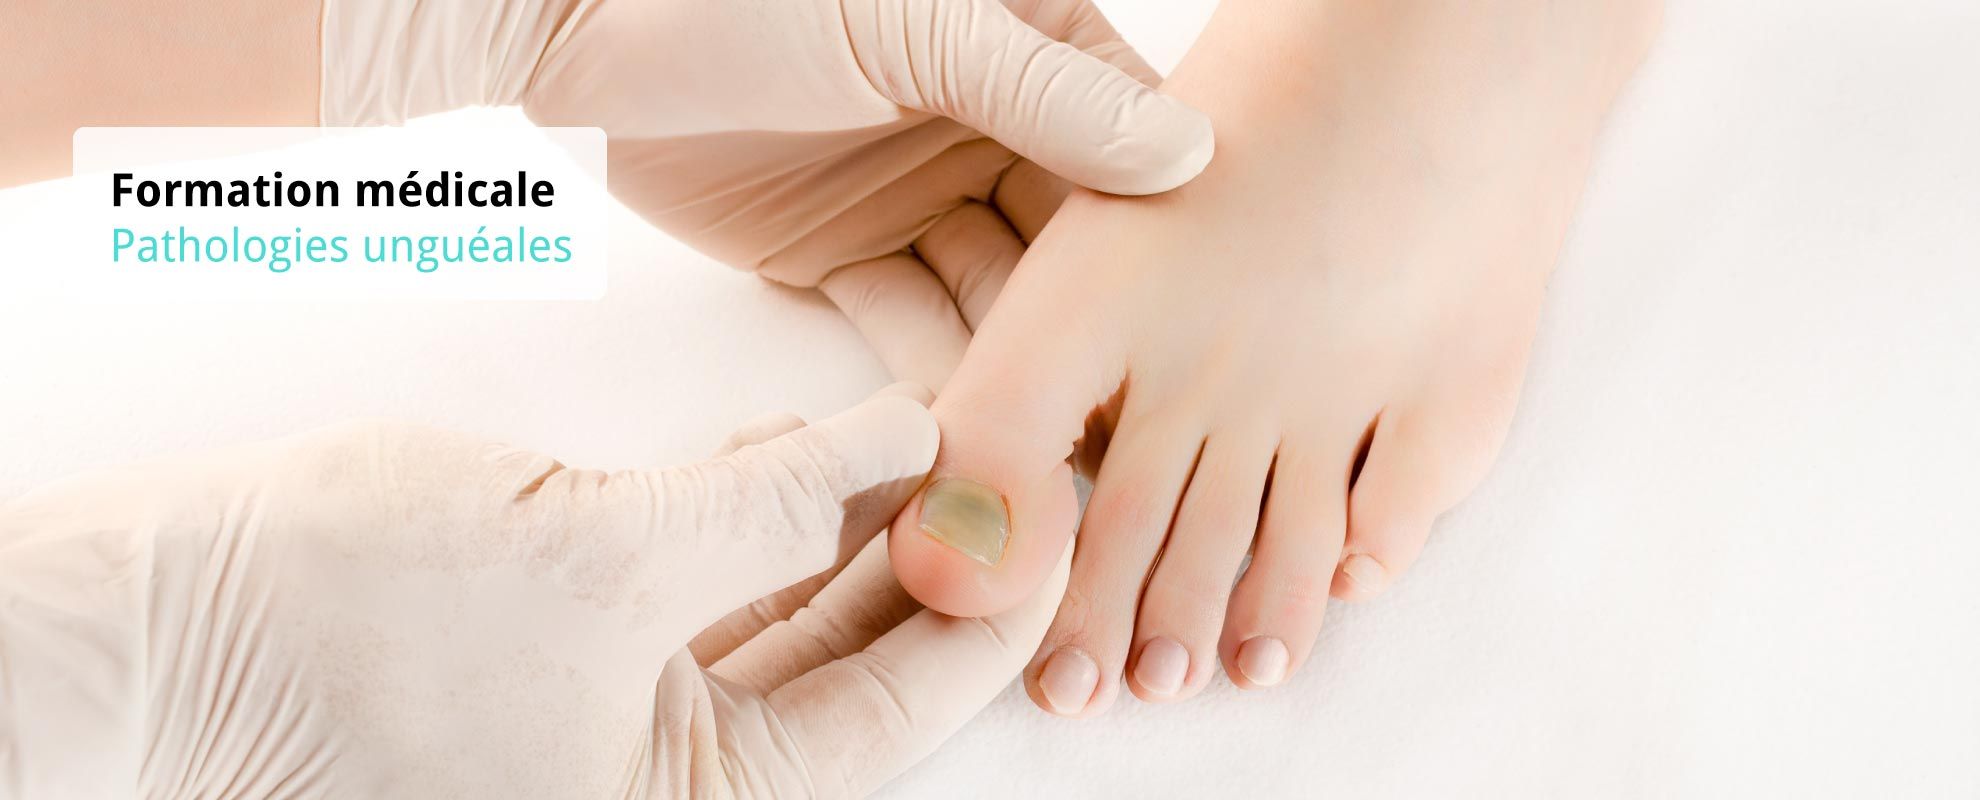 bandeau-formationmedicale-pathologies-ungueales photo d'un pied et main de médecin